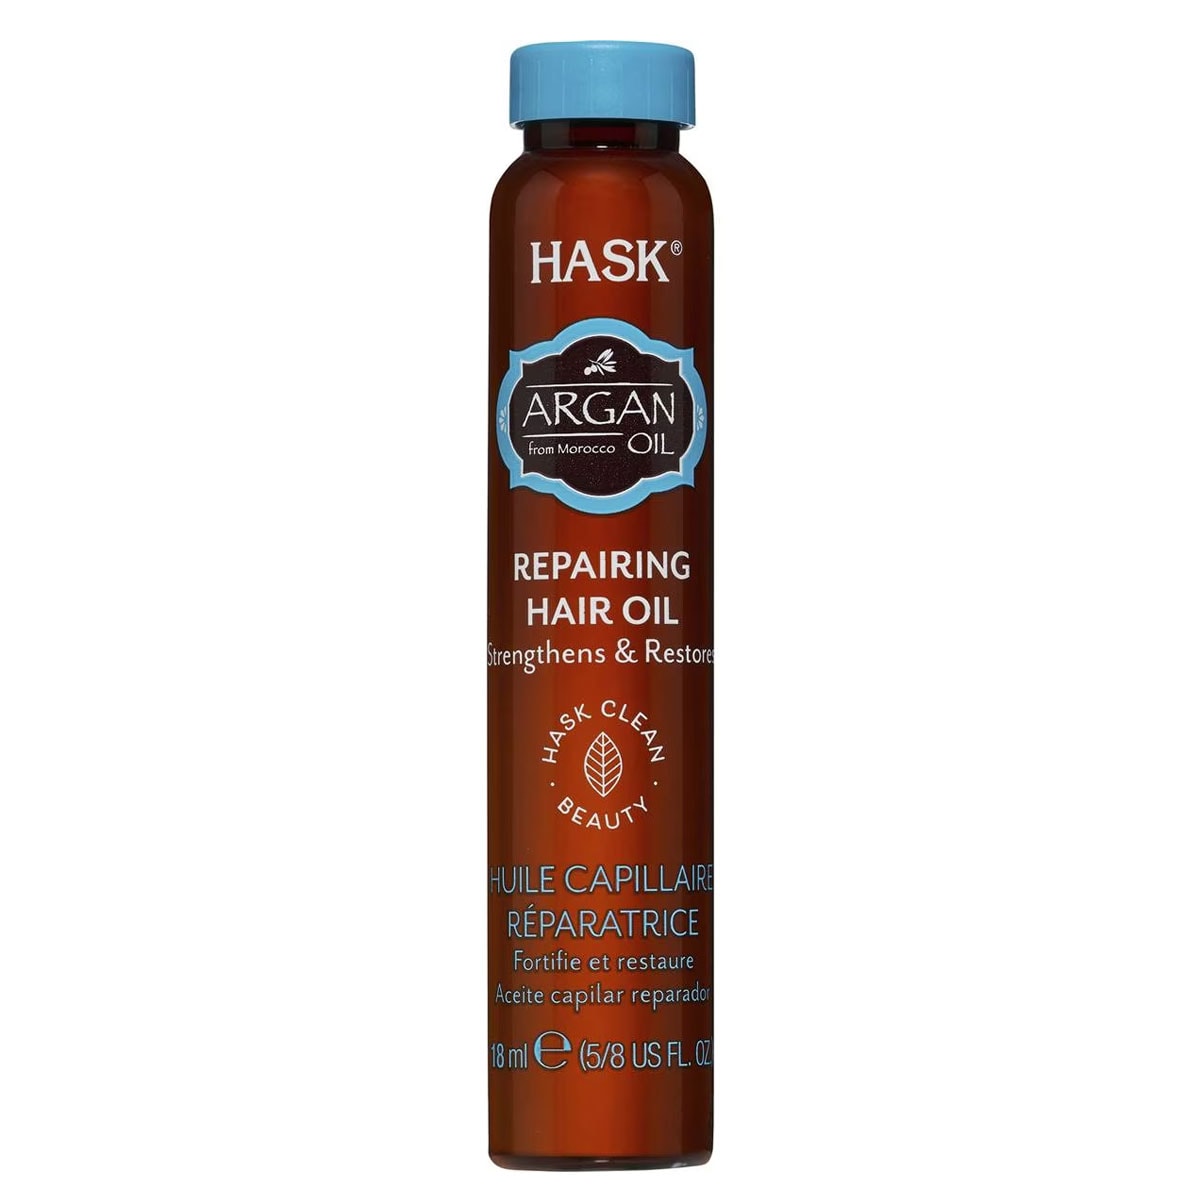 Hask Argan Oil Repairing Hair Oil 18ml